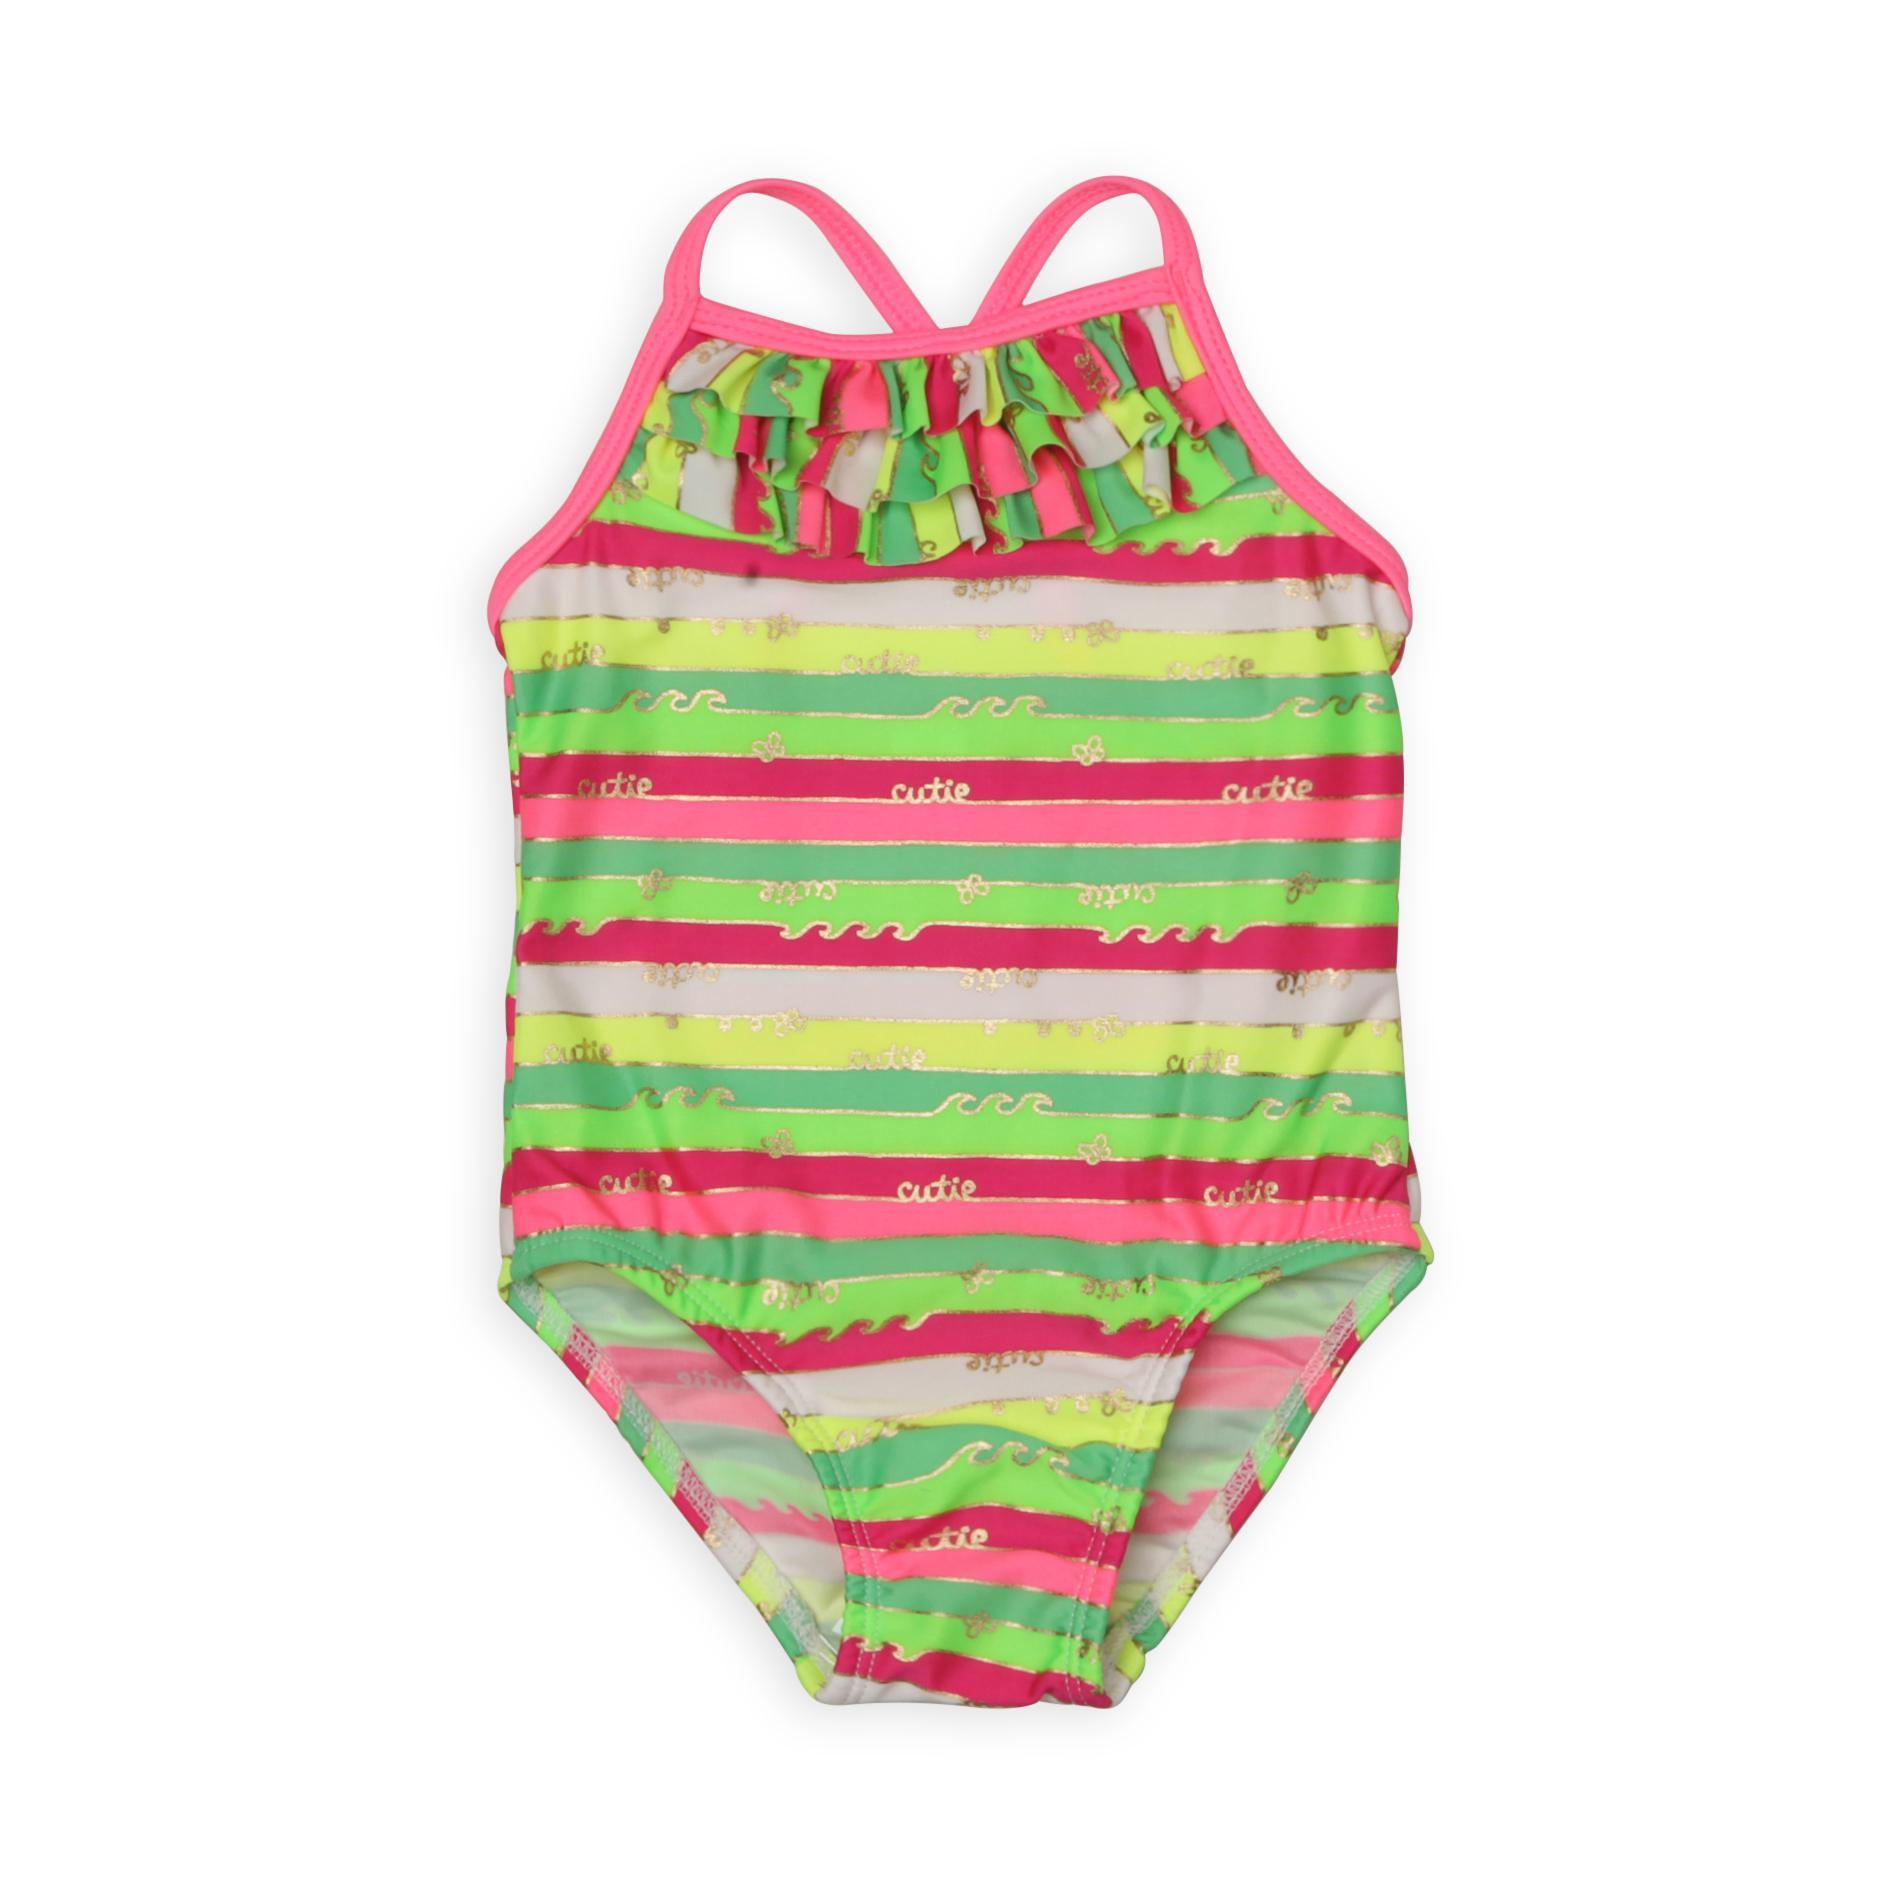 Joe Boxer Infant & Toddler Girl's Ruffled-Front Swimsuit - Striped